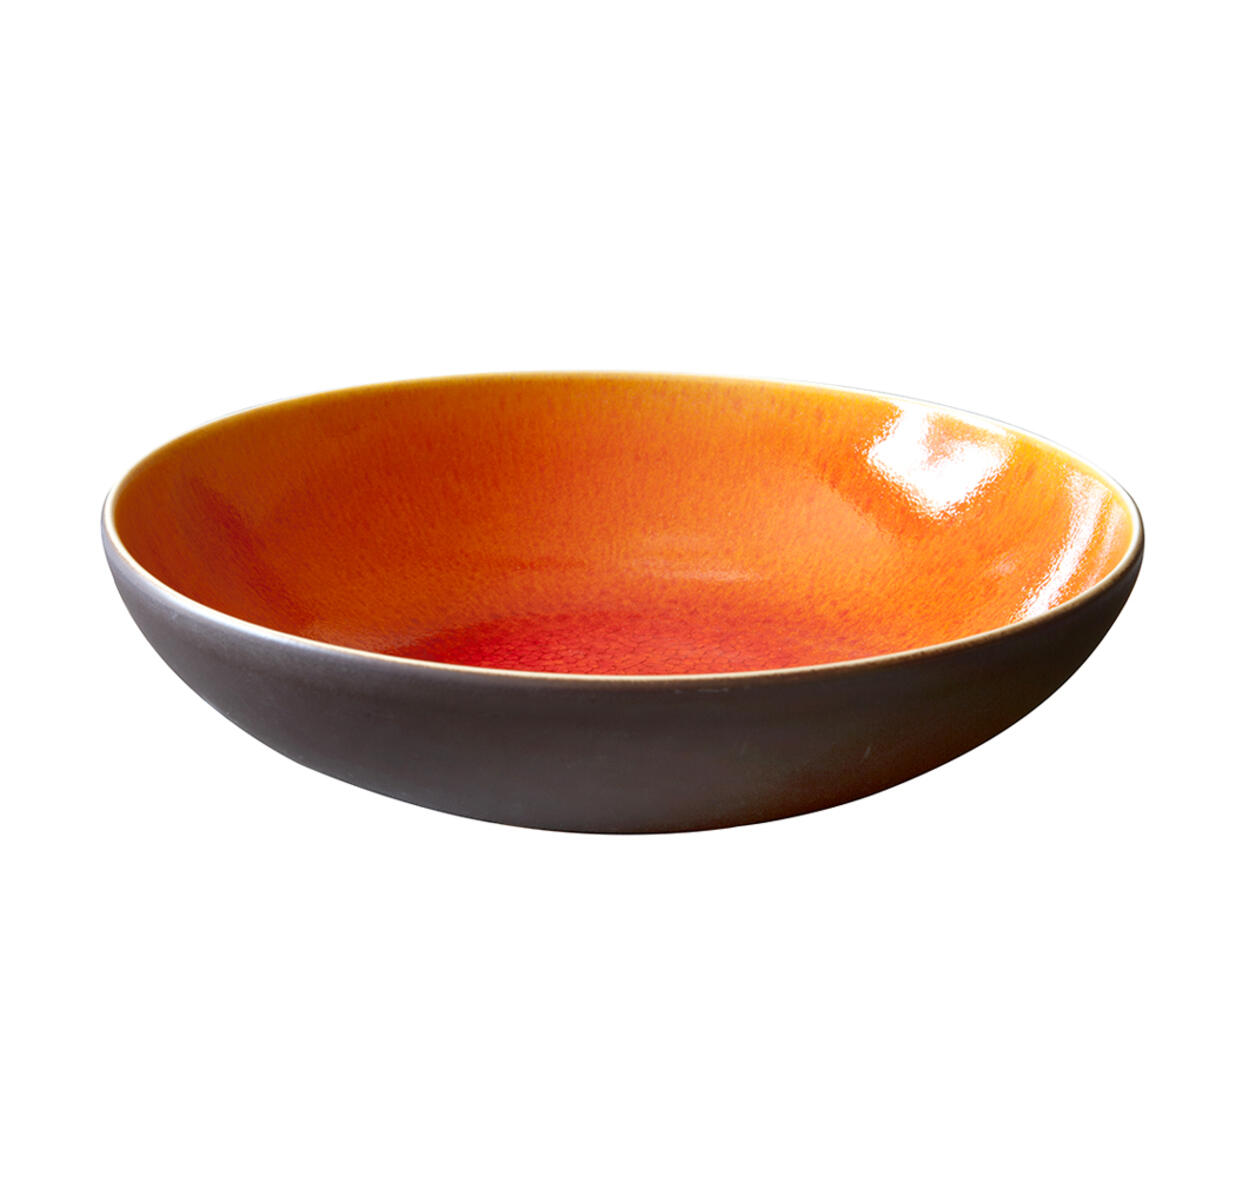 pasta tourron orange ceramic manufacturer